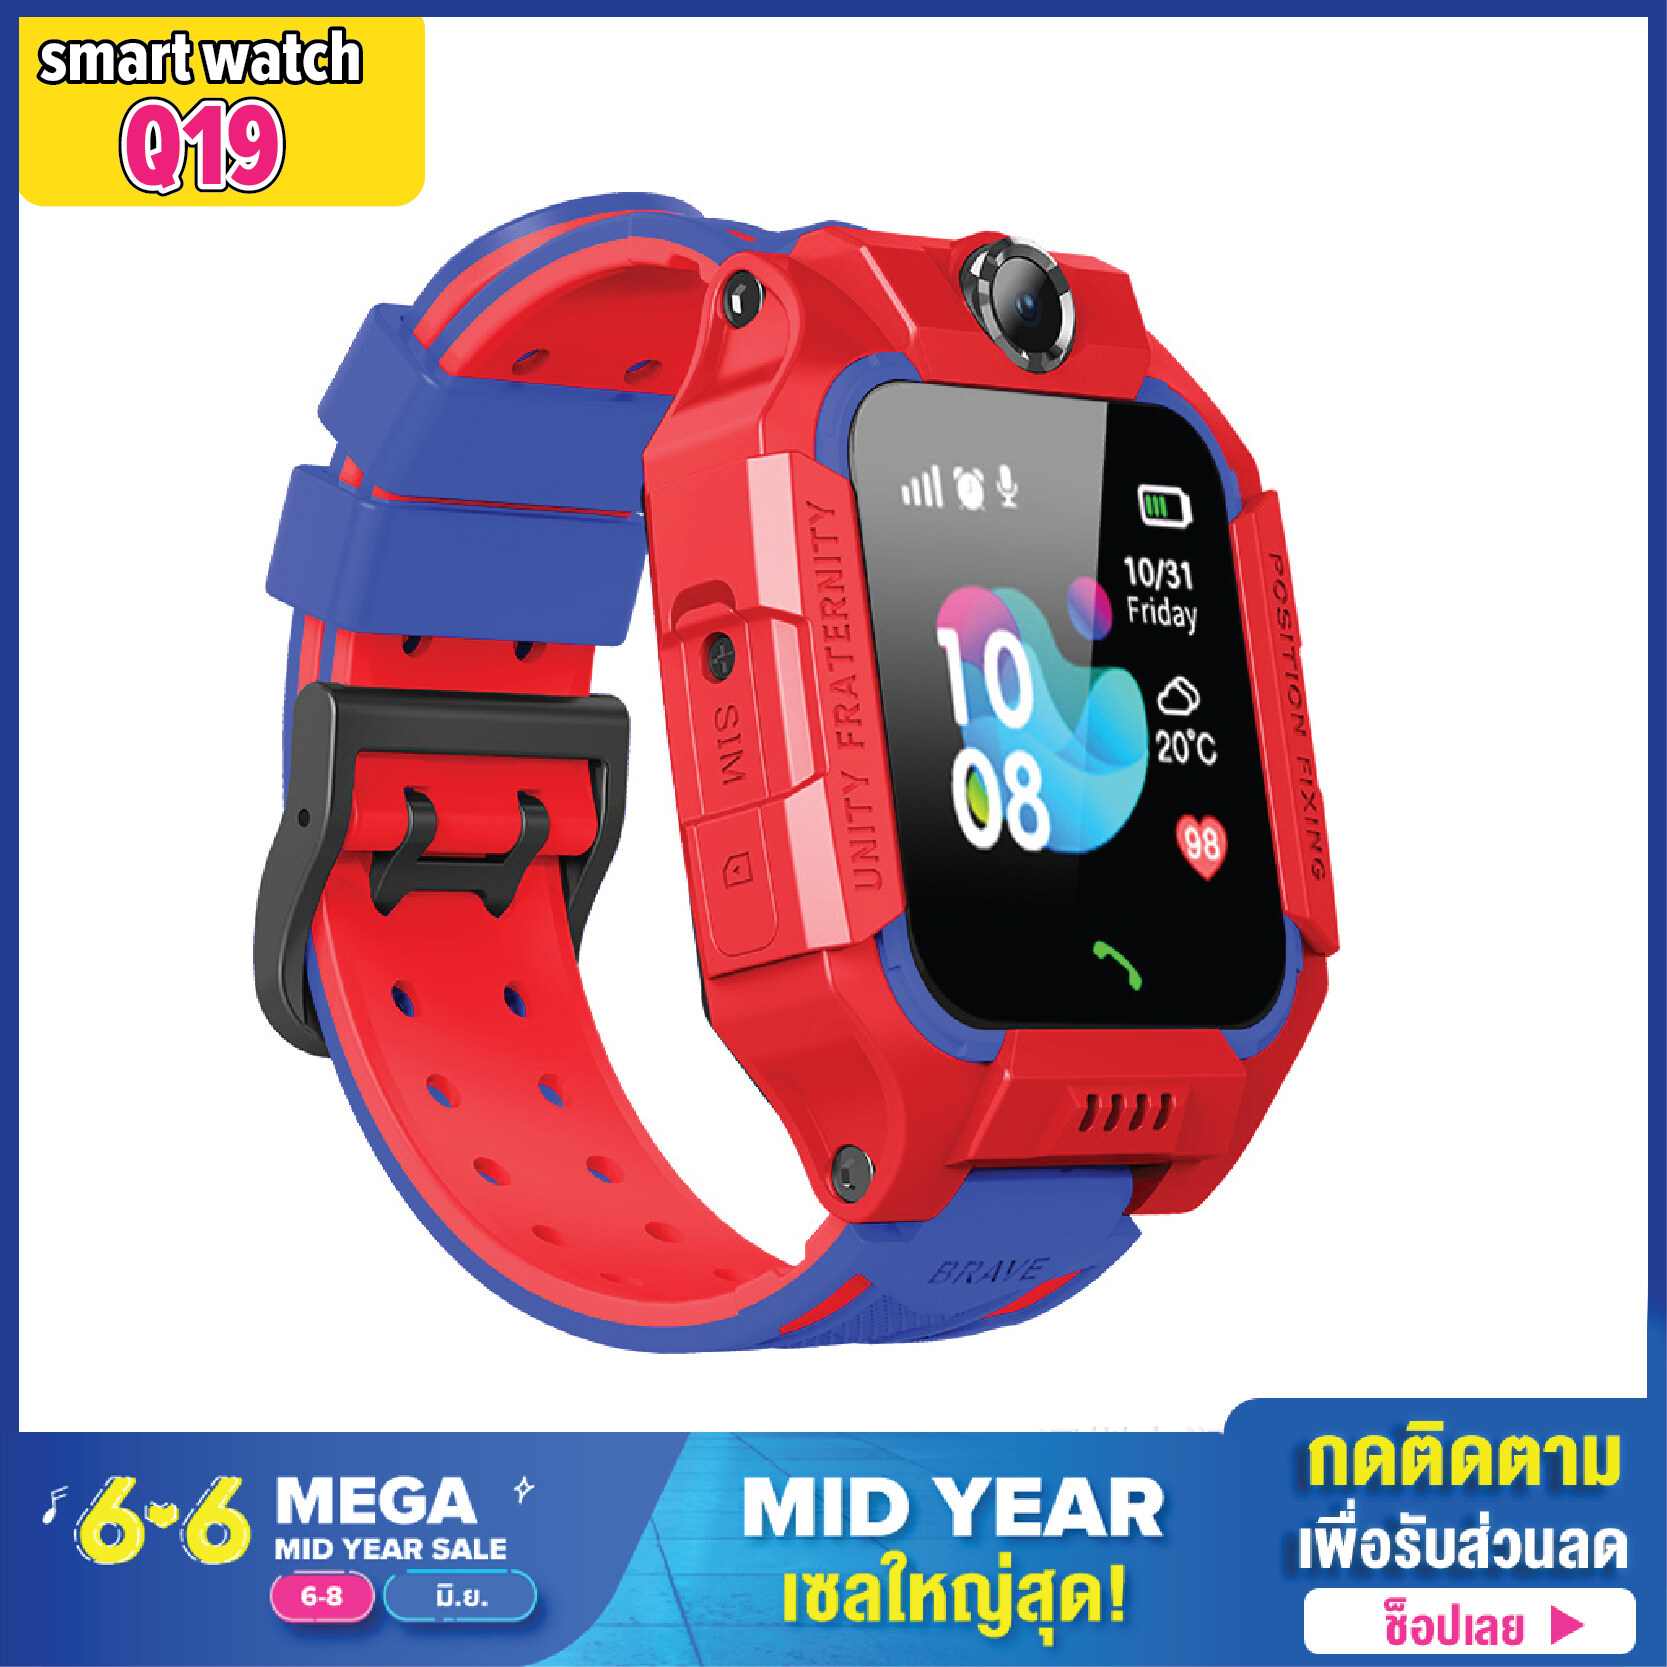 [ส่งจากไทย] [การันตีถูกสุด] นาฬิกาเด็ก รุ่น Smart Watch Q19 เมนูไทย รองรับภาษาไทย ใส่ซิมได้ โทรได้ พร้อมระบบ GPS ติดตามตำแหน่ง Kid Smart Watch นาฬิกาป้องกันเด็กหาย ไอโม่ imoo สมาร์ทวอชท์ นาฬิกาอัจฉริยะ นาฬิกาเพื่อสุขภาพ ส่งไว บริการเก็บเงินปลายทาง